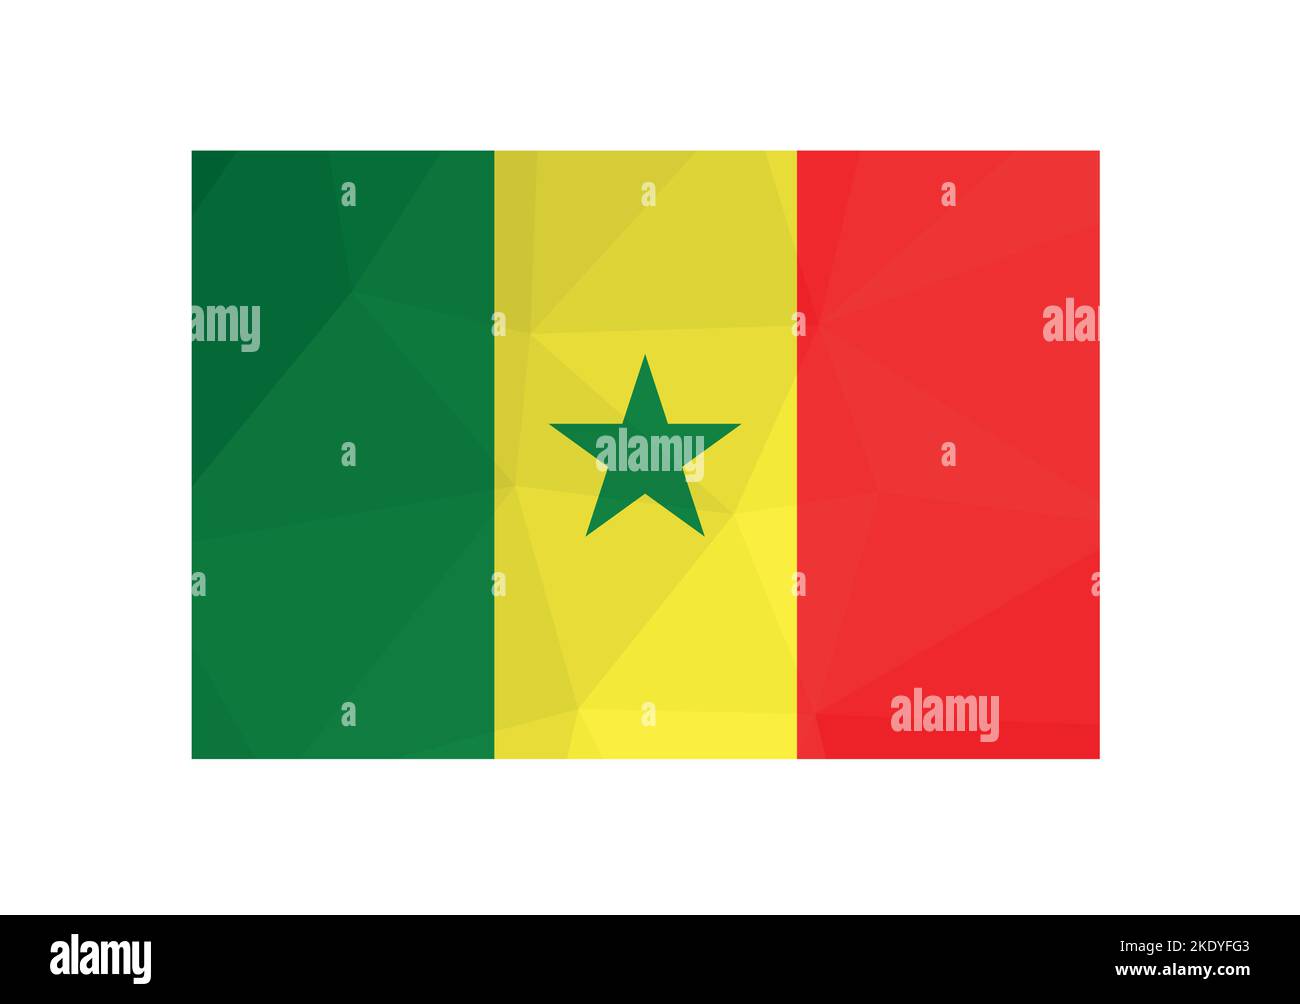 Illustration vectorielle. Symbole officiel du Sénégal. Drapeau national avec rayures vertes, jaunes, rouges et étoiles. Design créatif en polyester bas avec triang Illustration de Vecteur